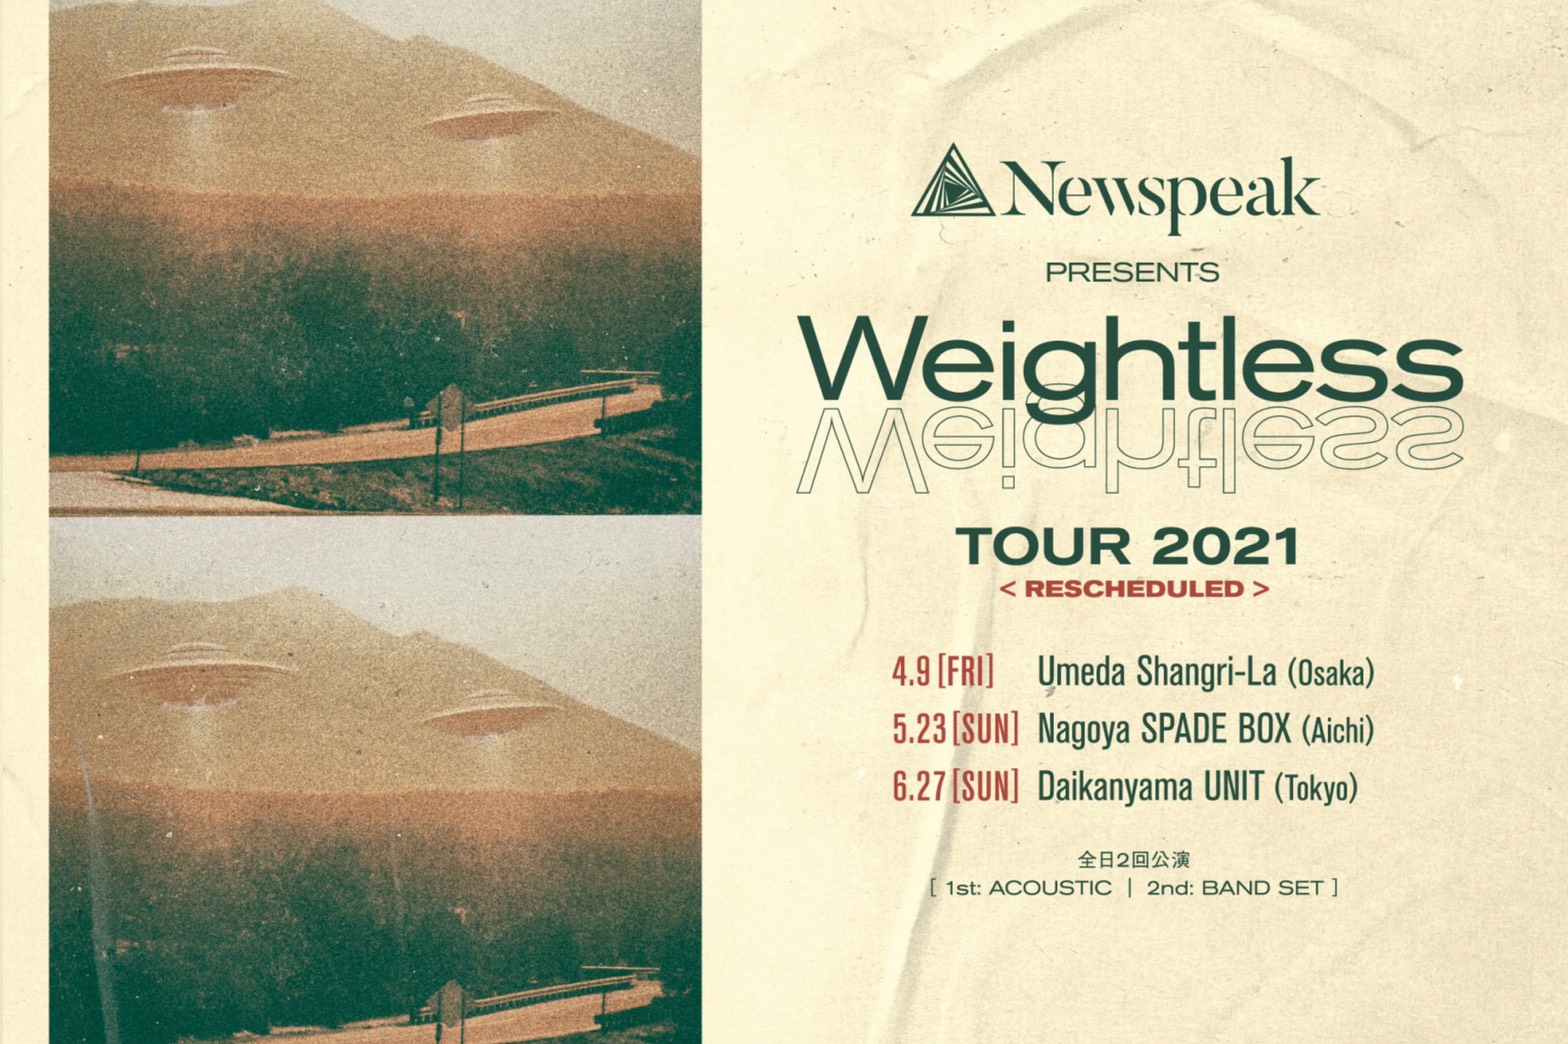 「Weightless Tour 2021」⼤阪公演 OPEN/START 時間変更のお知らせ